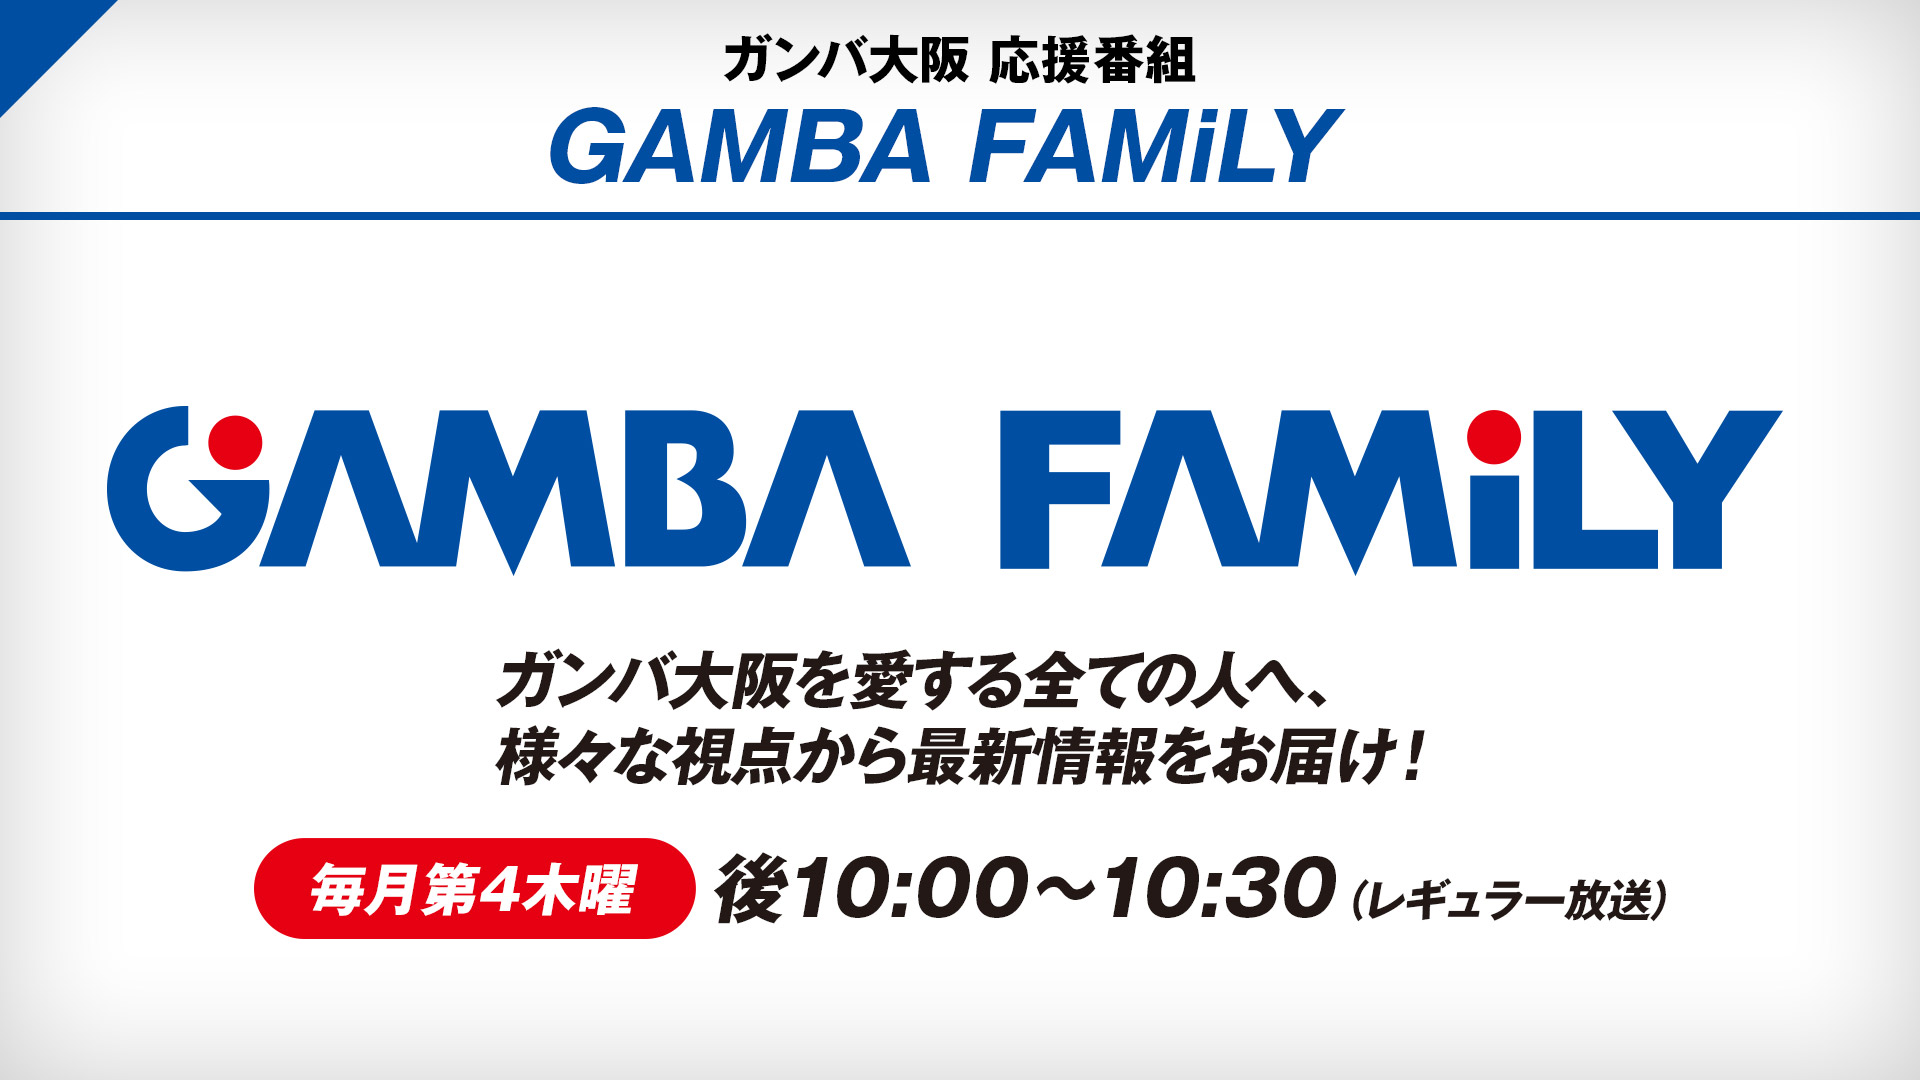 ガンバ大阪 応援番組 Gamba Family 71 番組詳細 オリジナル